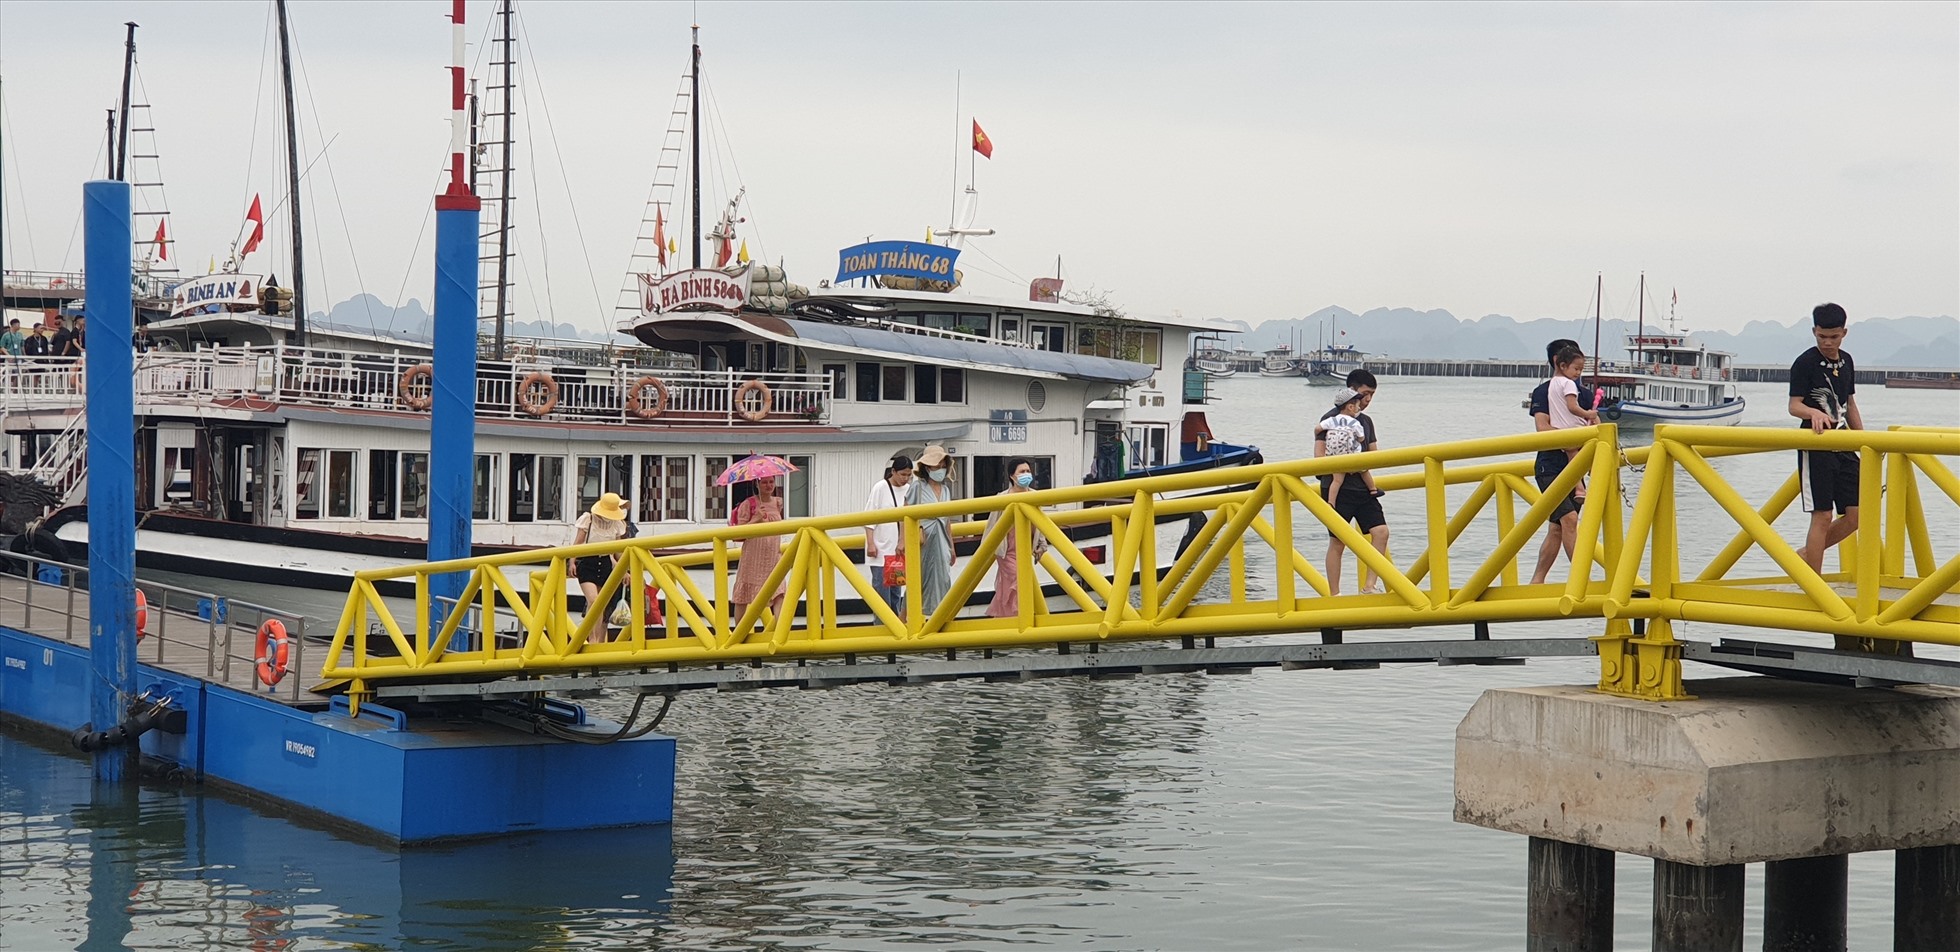 Cảng tàu khách quốc tế Hạ Long có hệ thống cảng tự nổi nên không phụ thuộc vào con nước, giúp tàu có thể cập bến dễ dàng bất cứ lúc nào. Ảnh: Nguyễn Hùng